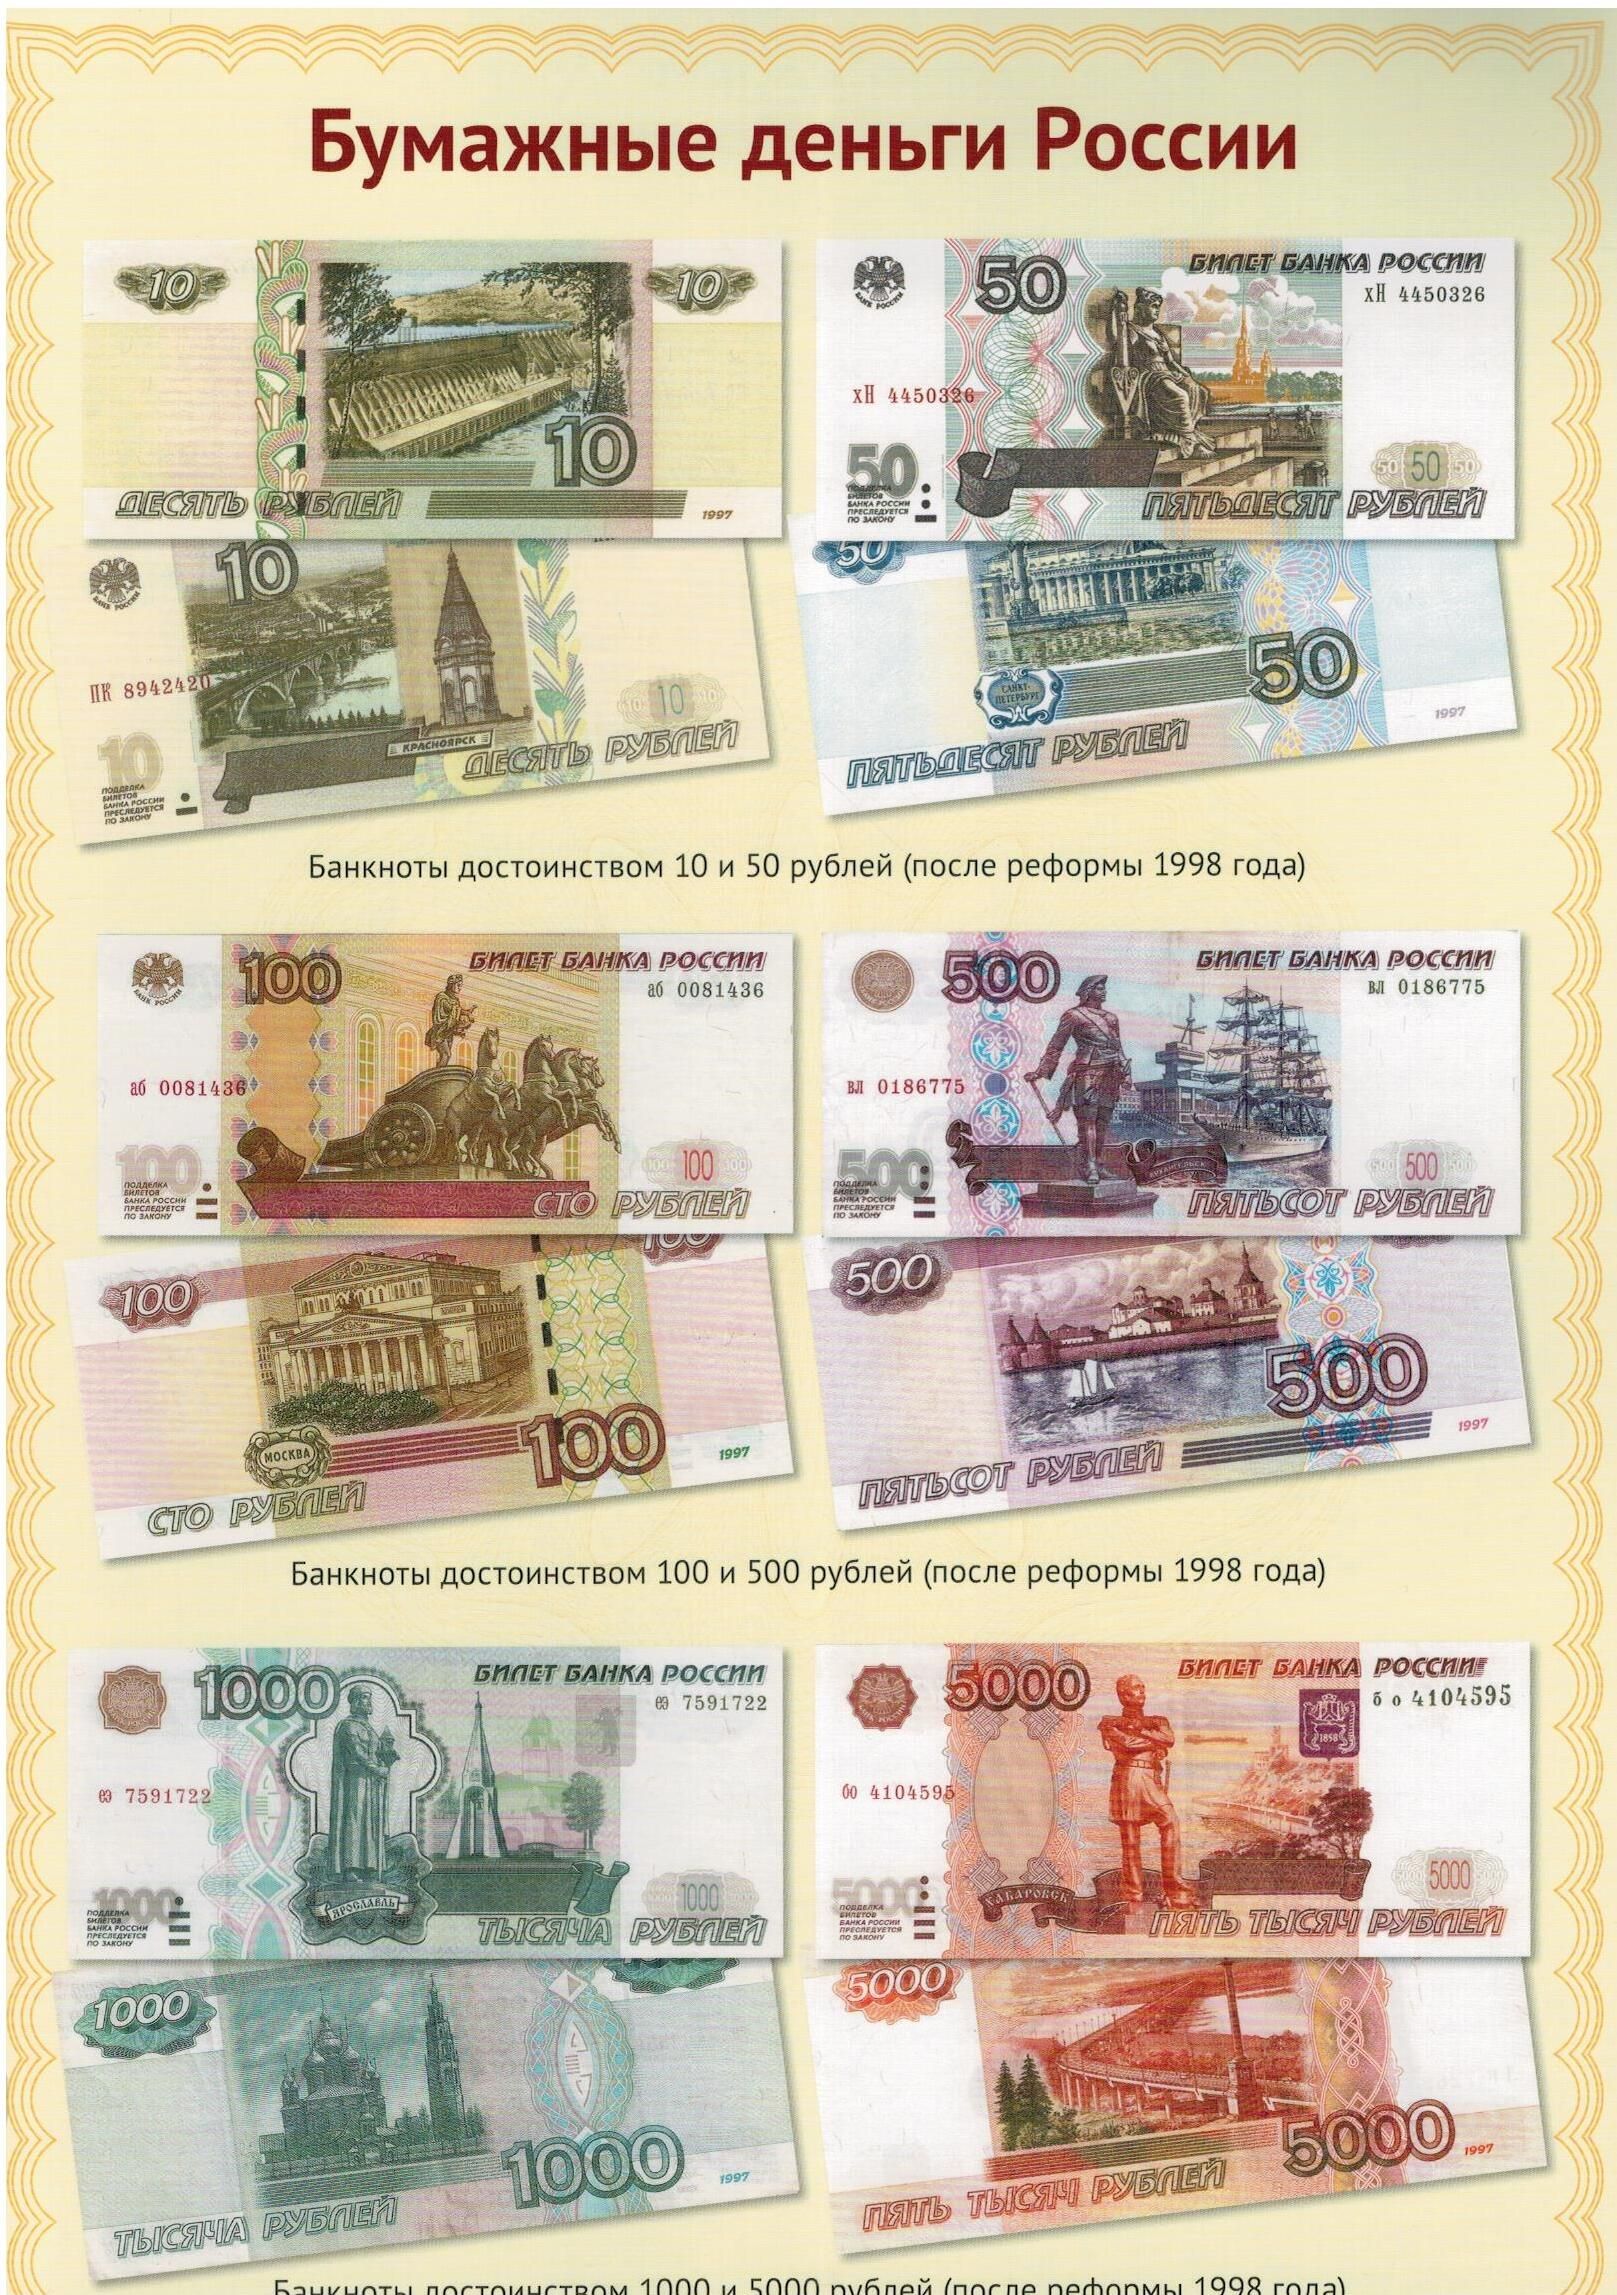 Дай озону деньги. Бумажныя деньги в России. Российские бумажные купюры. Современные бумажные деньги. Бумажные банкноты РФ.